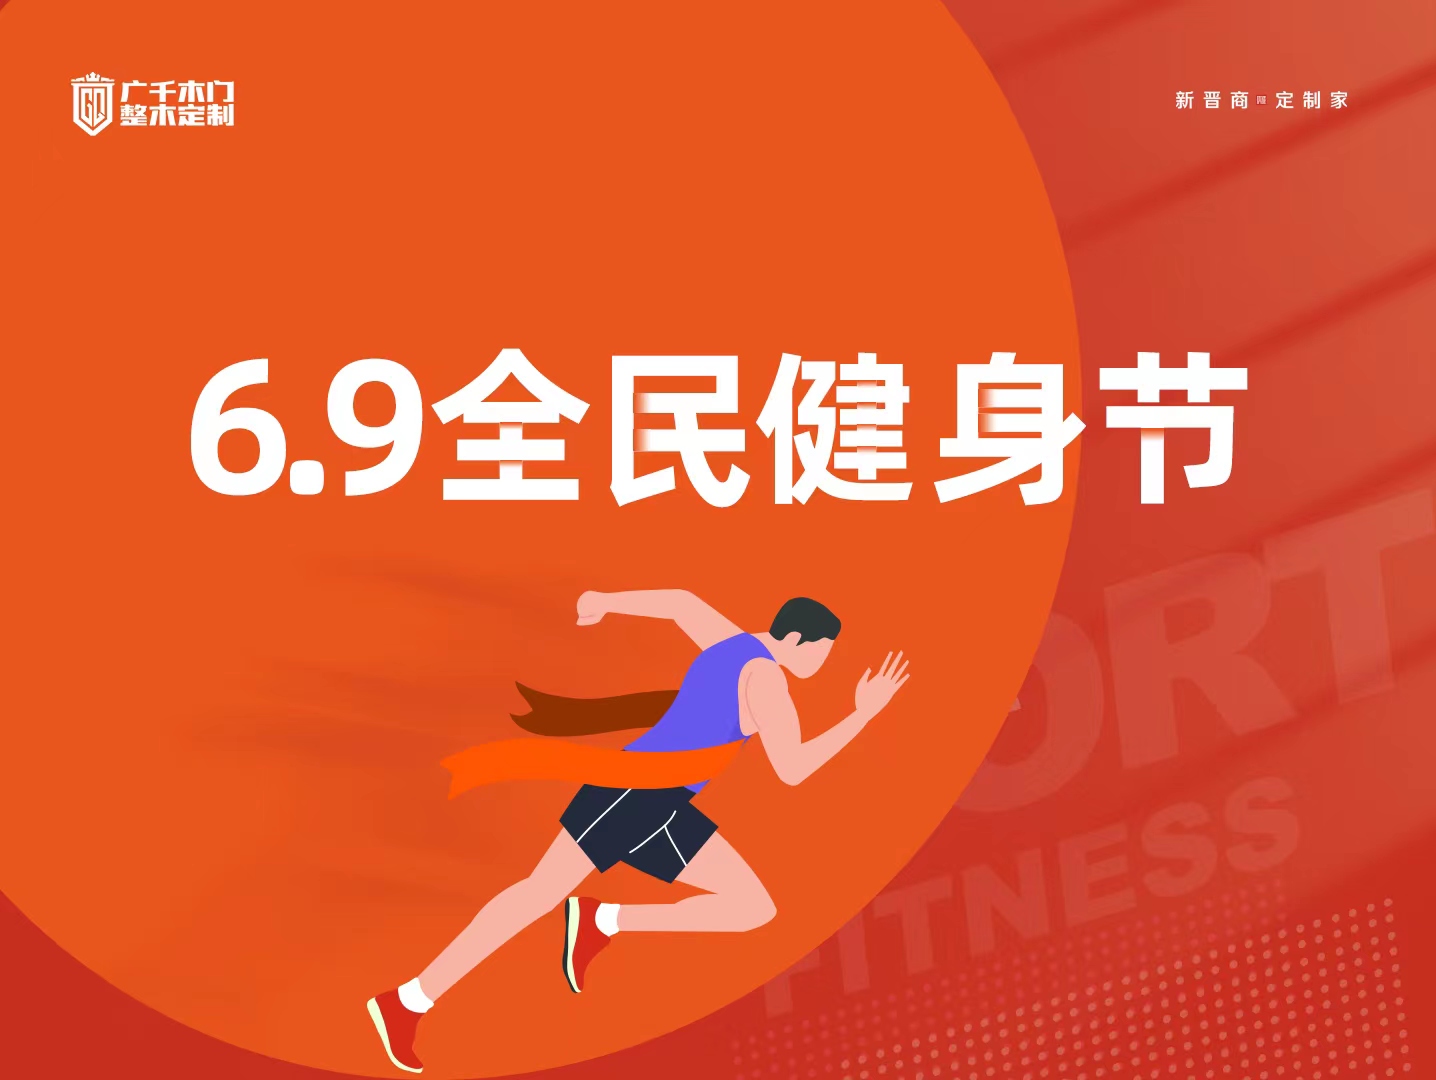 广千木门 | 6.9全民健身节 第二届趣味运动会圆满